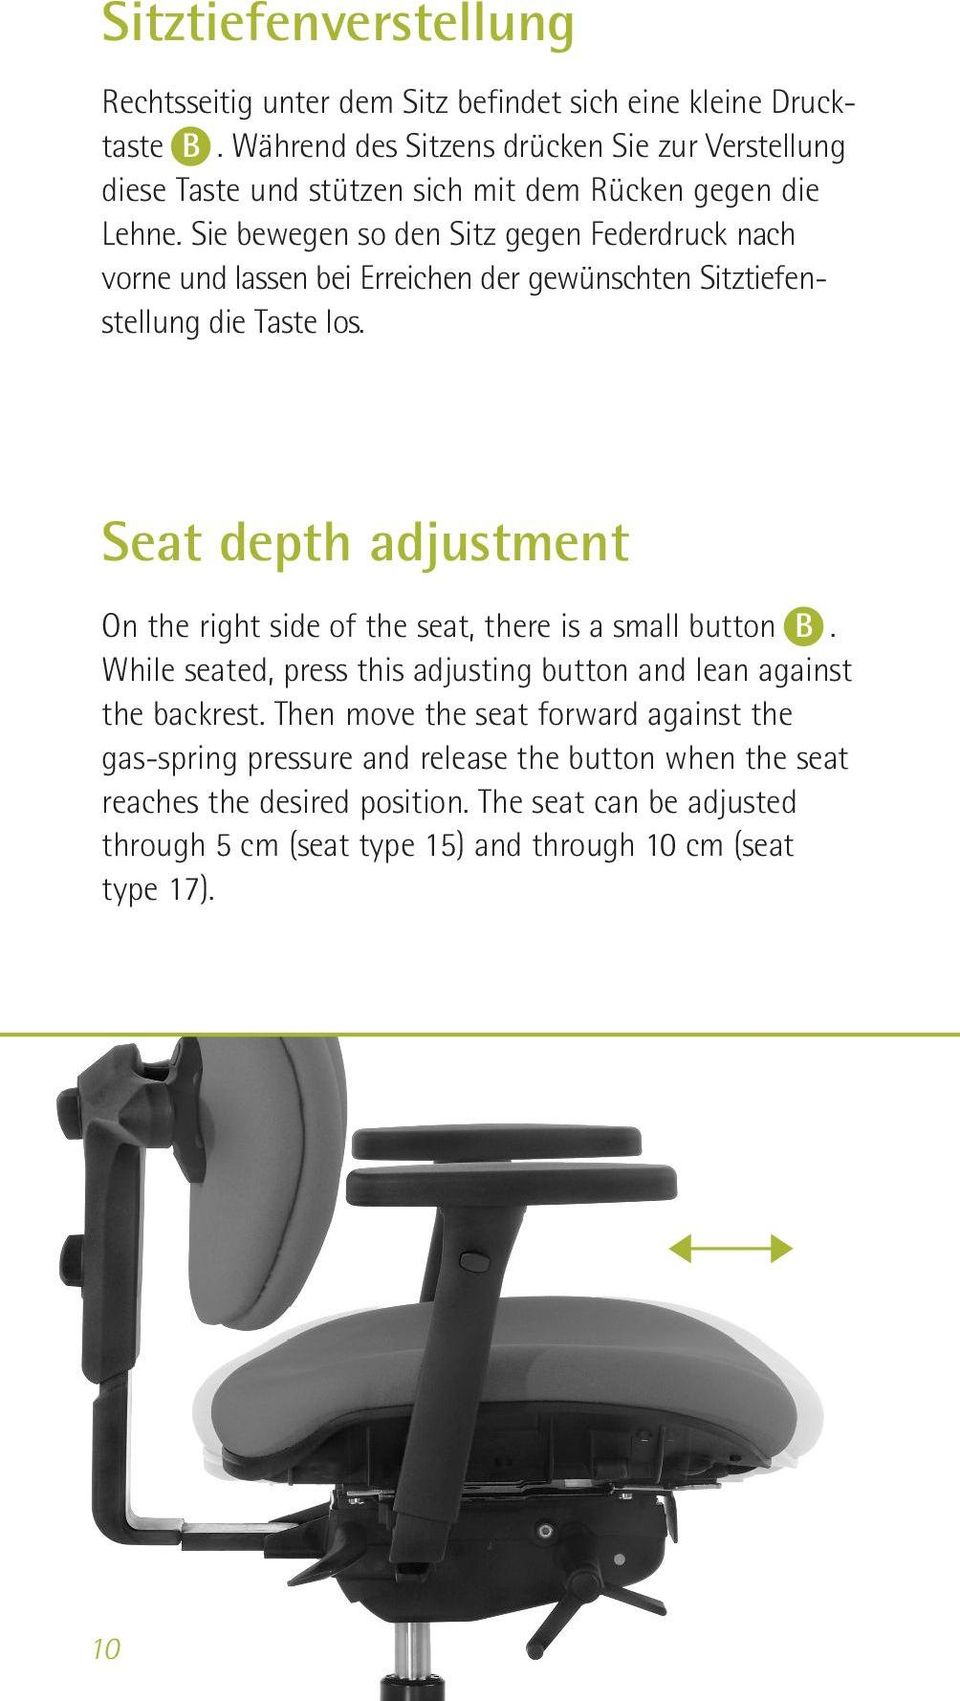 Sie bewegen so den Sitz gegen Federdruck nach vorne und lassen bei Erreichen der gewünschten Sitztiefenstellung die Taste los.